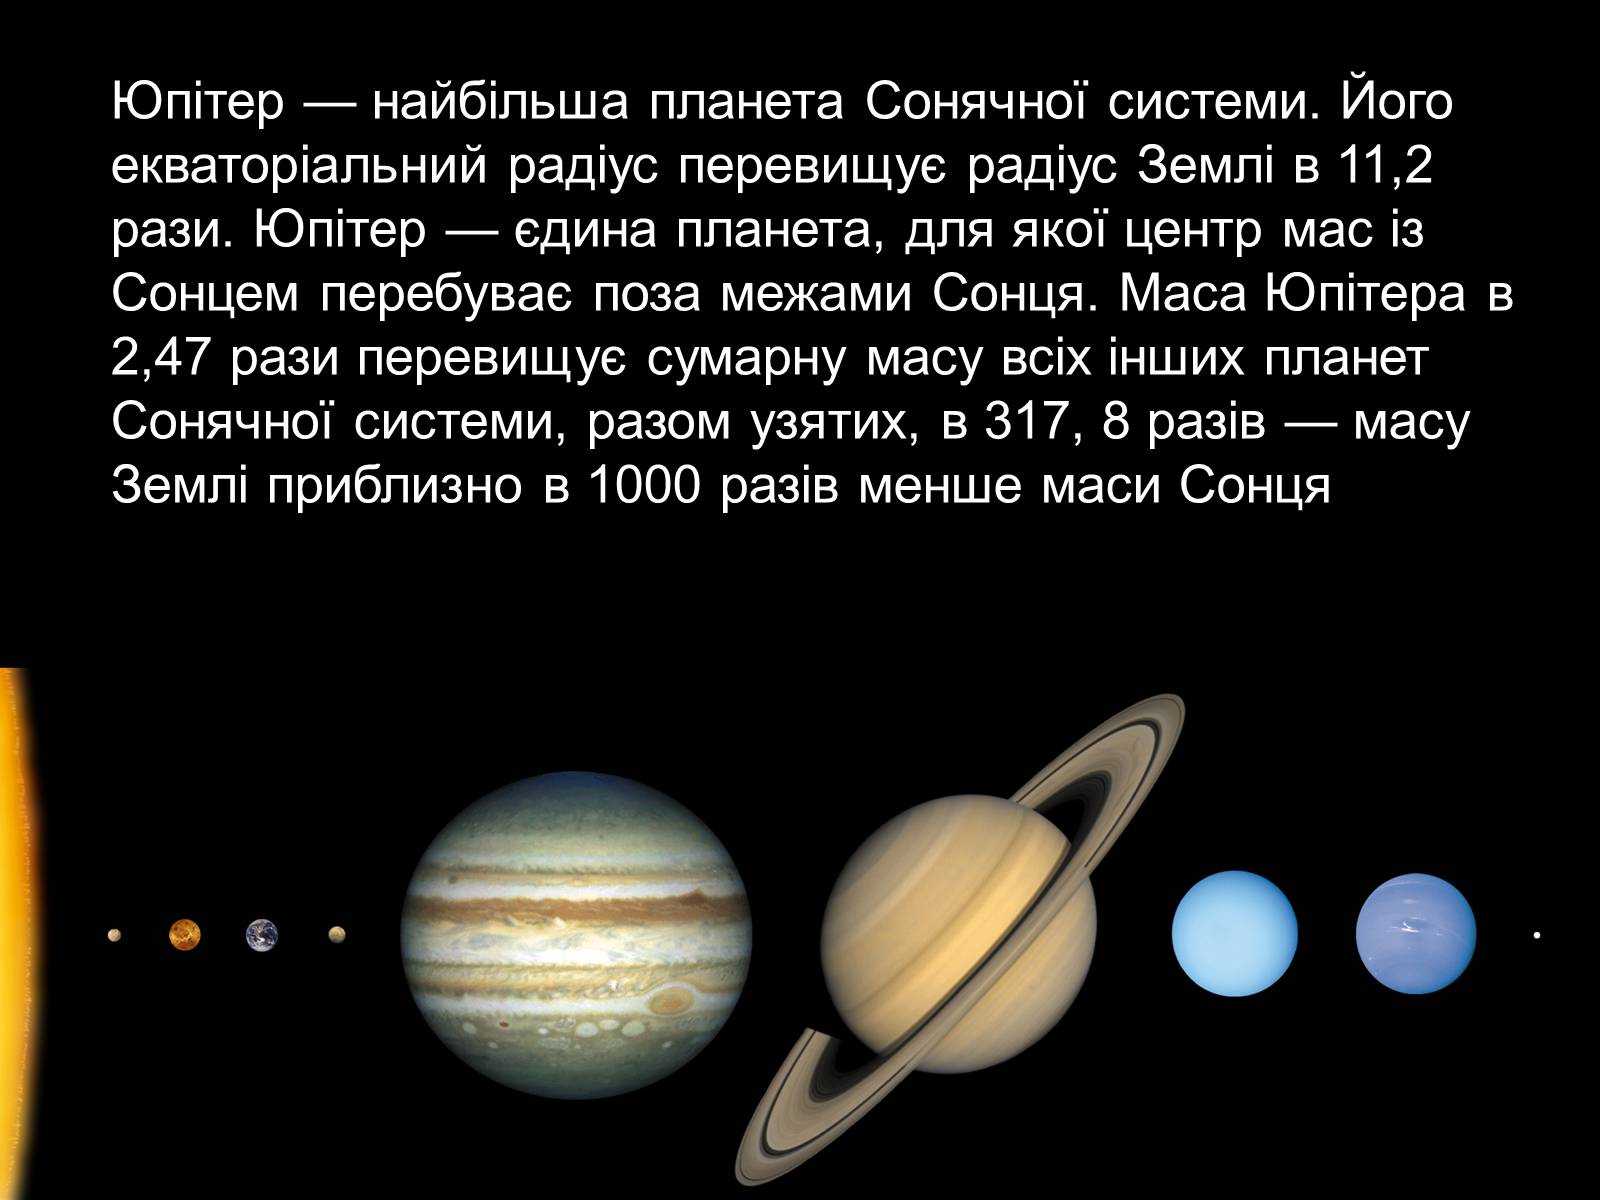 Земля третья по счету планета от солнца. Положение Юпитера в солнечной системе. Юпитер Планета положение в солнечной системе. Юпитер Планета газовый гигант. Юпитер Планета от солнца.